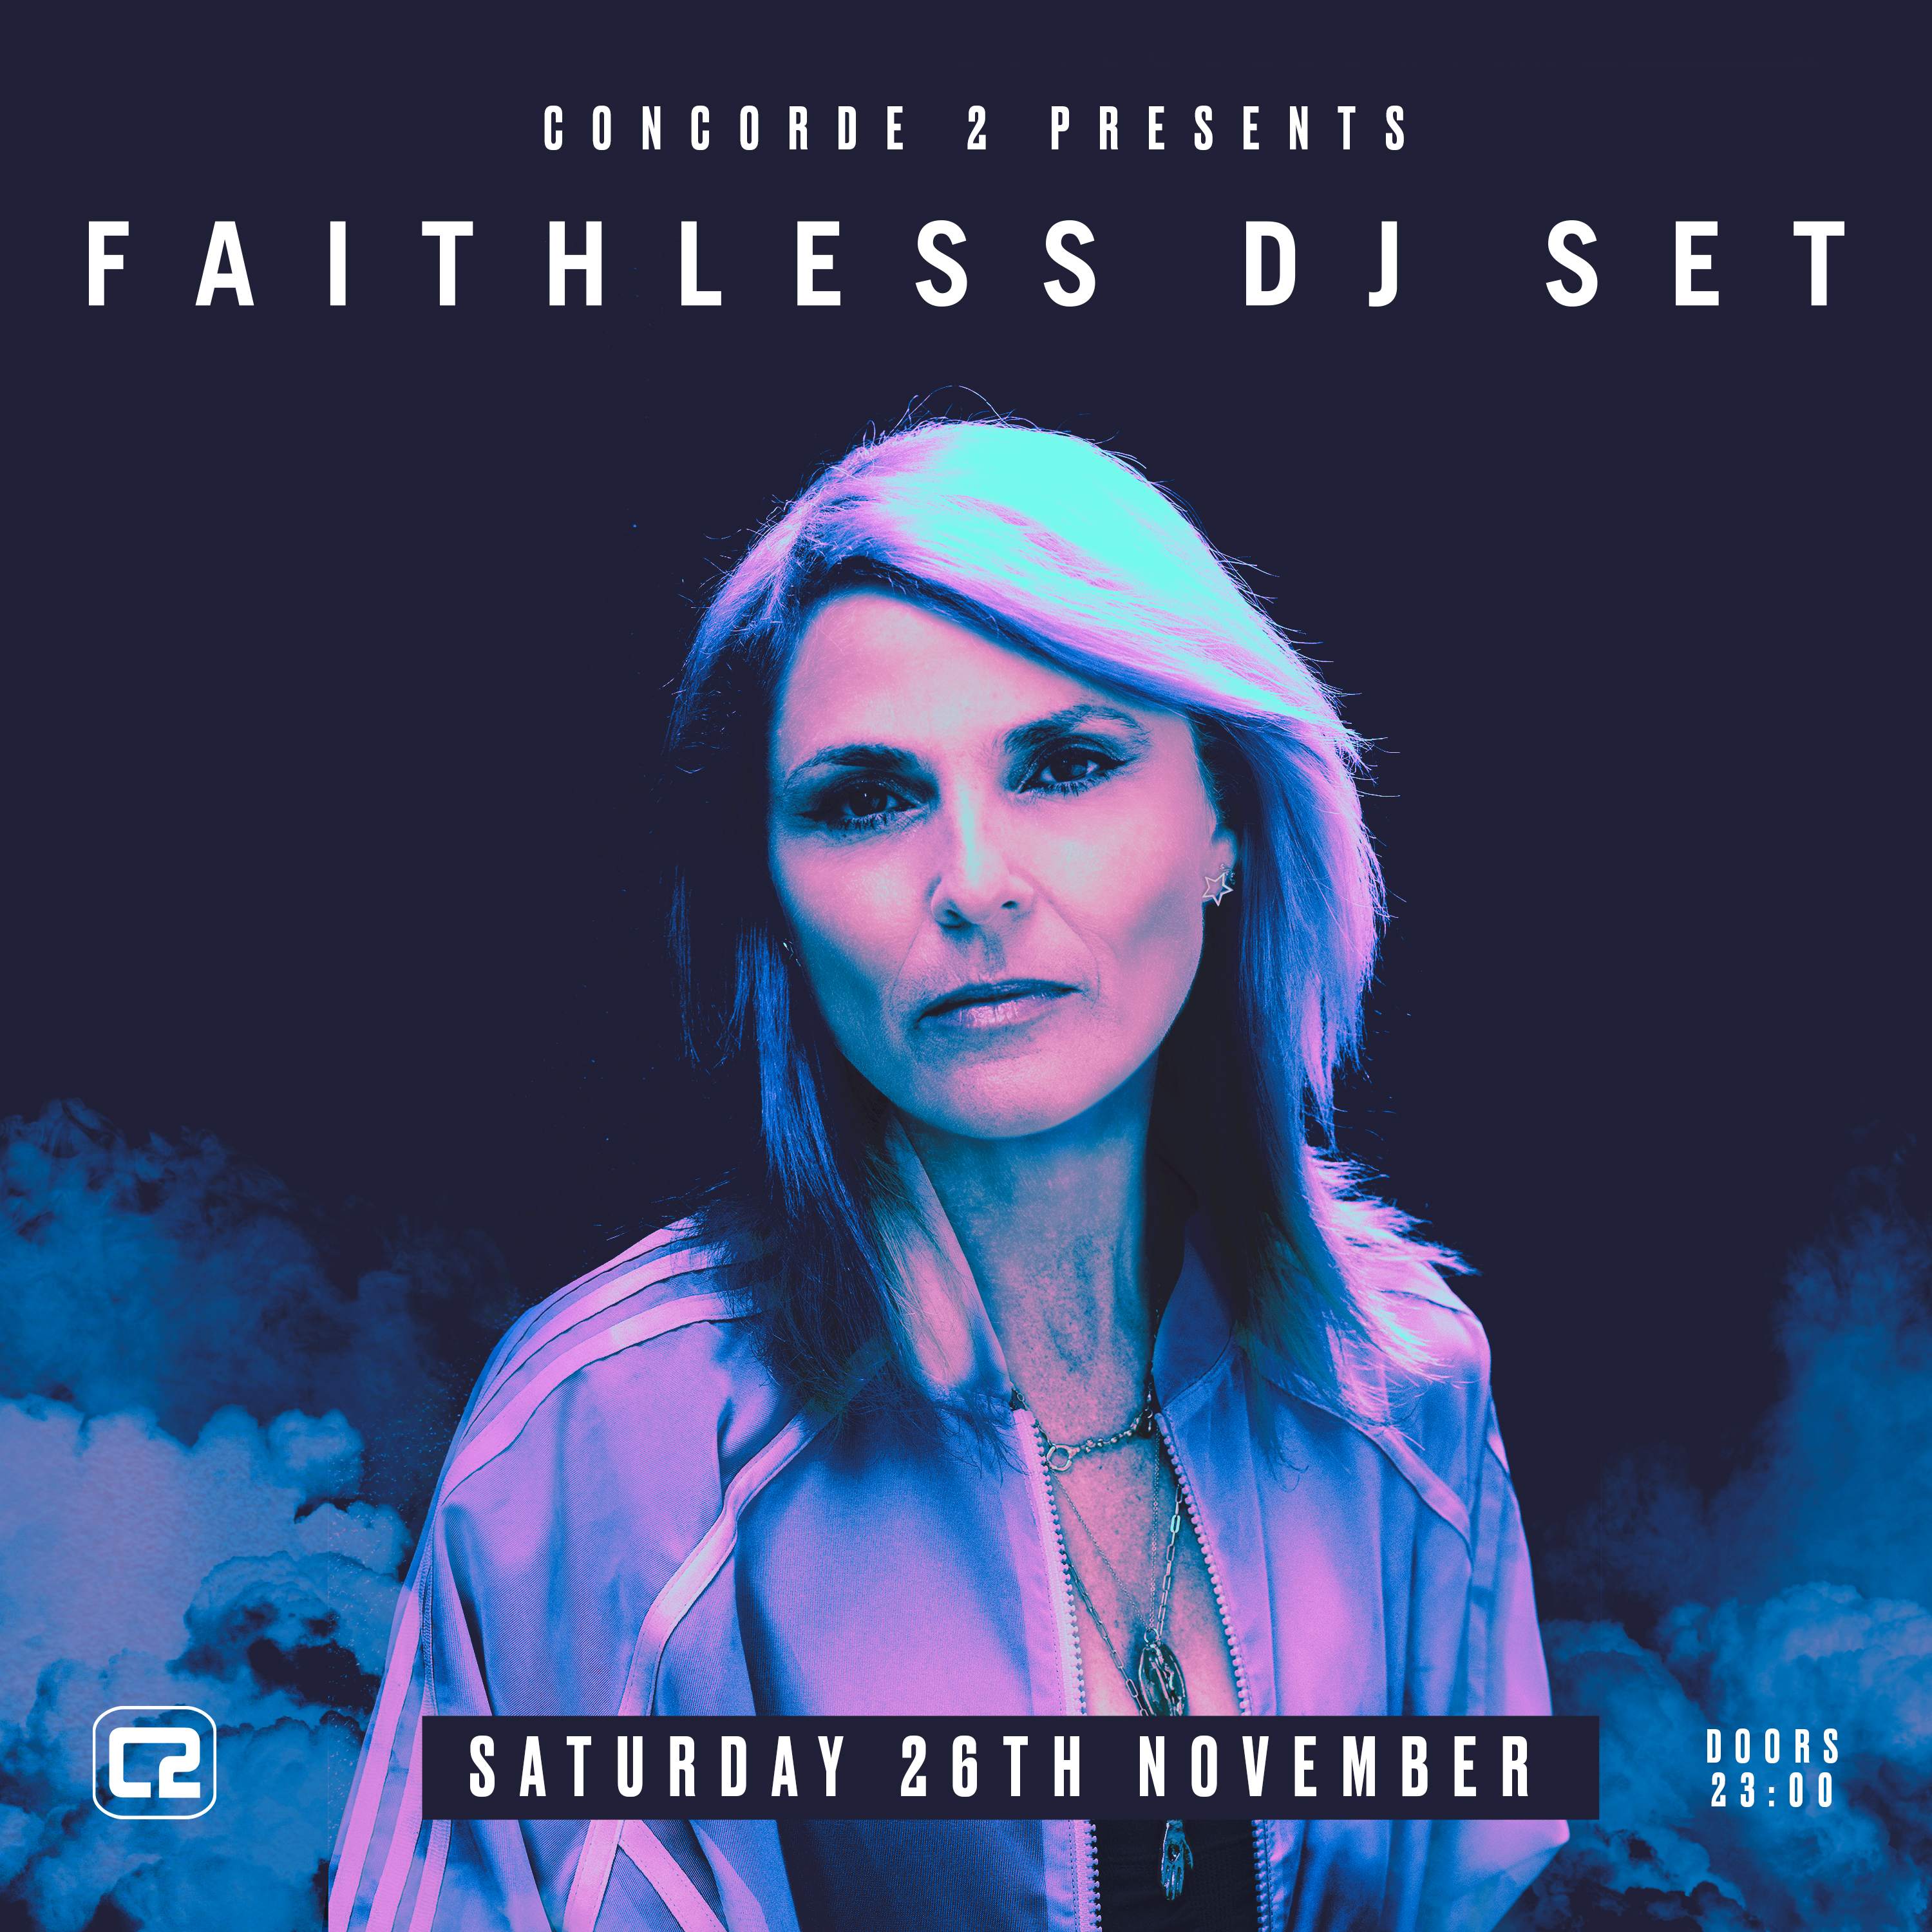 Faithless (DJ Set) - フライヤー表